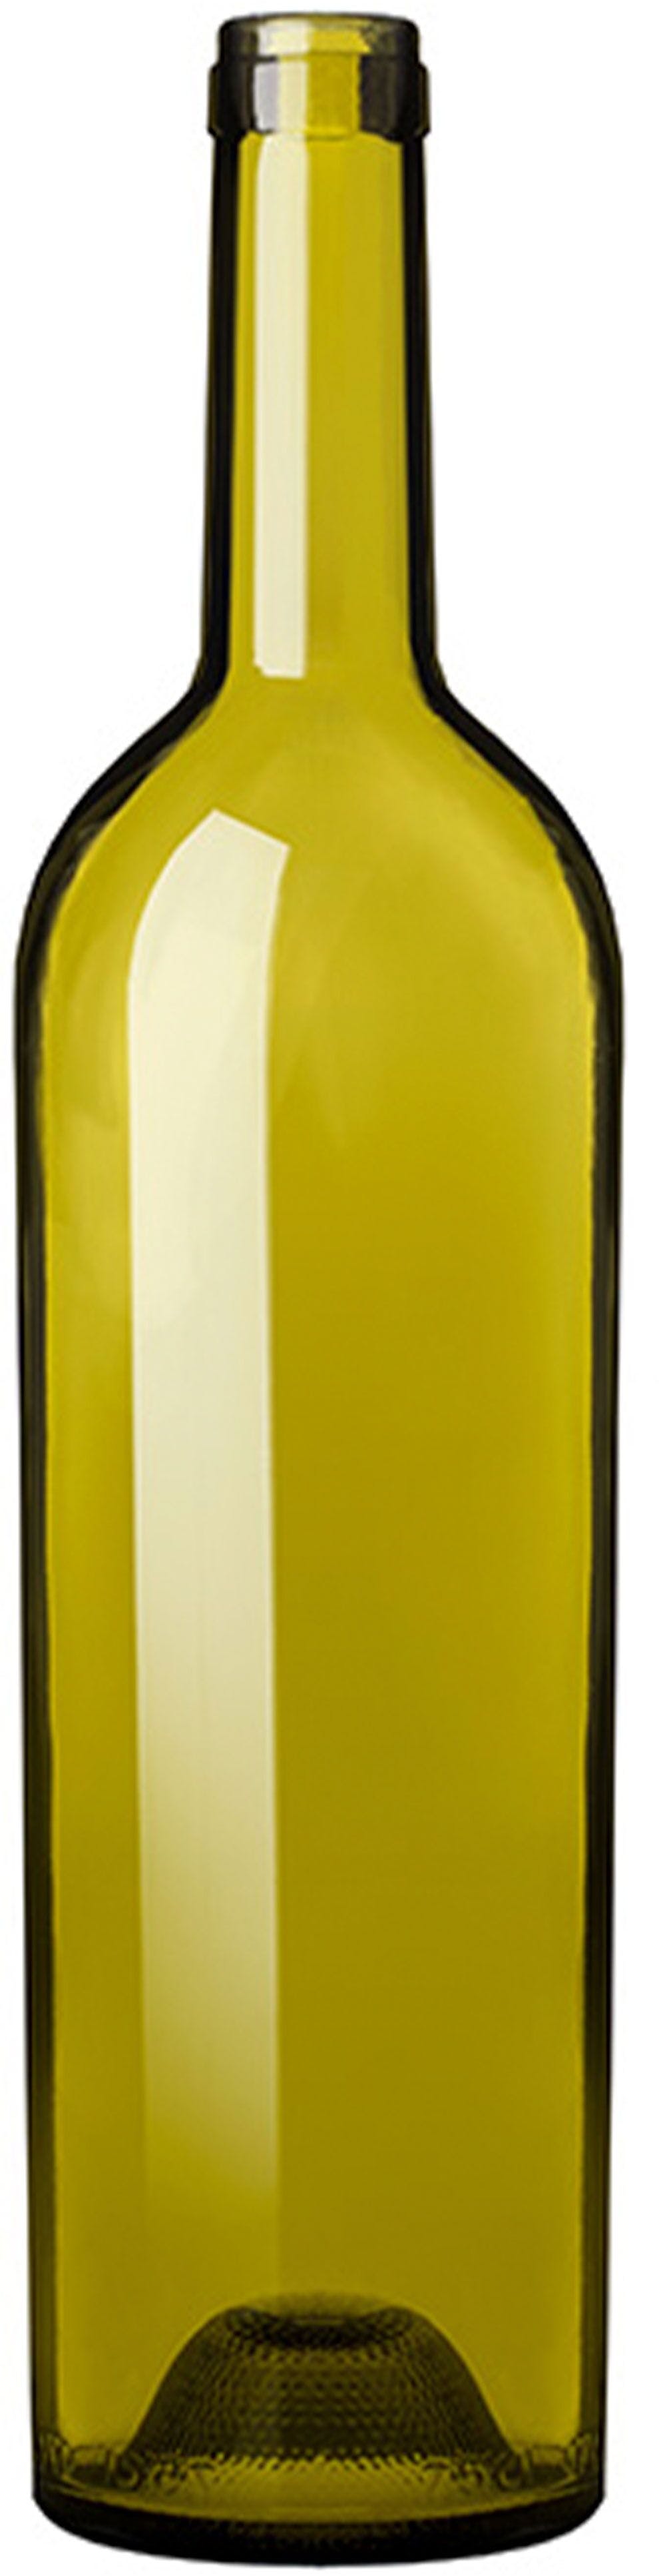 Bottle BORD ELITE 750 LT S UVAG